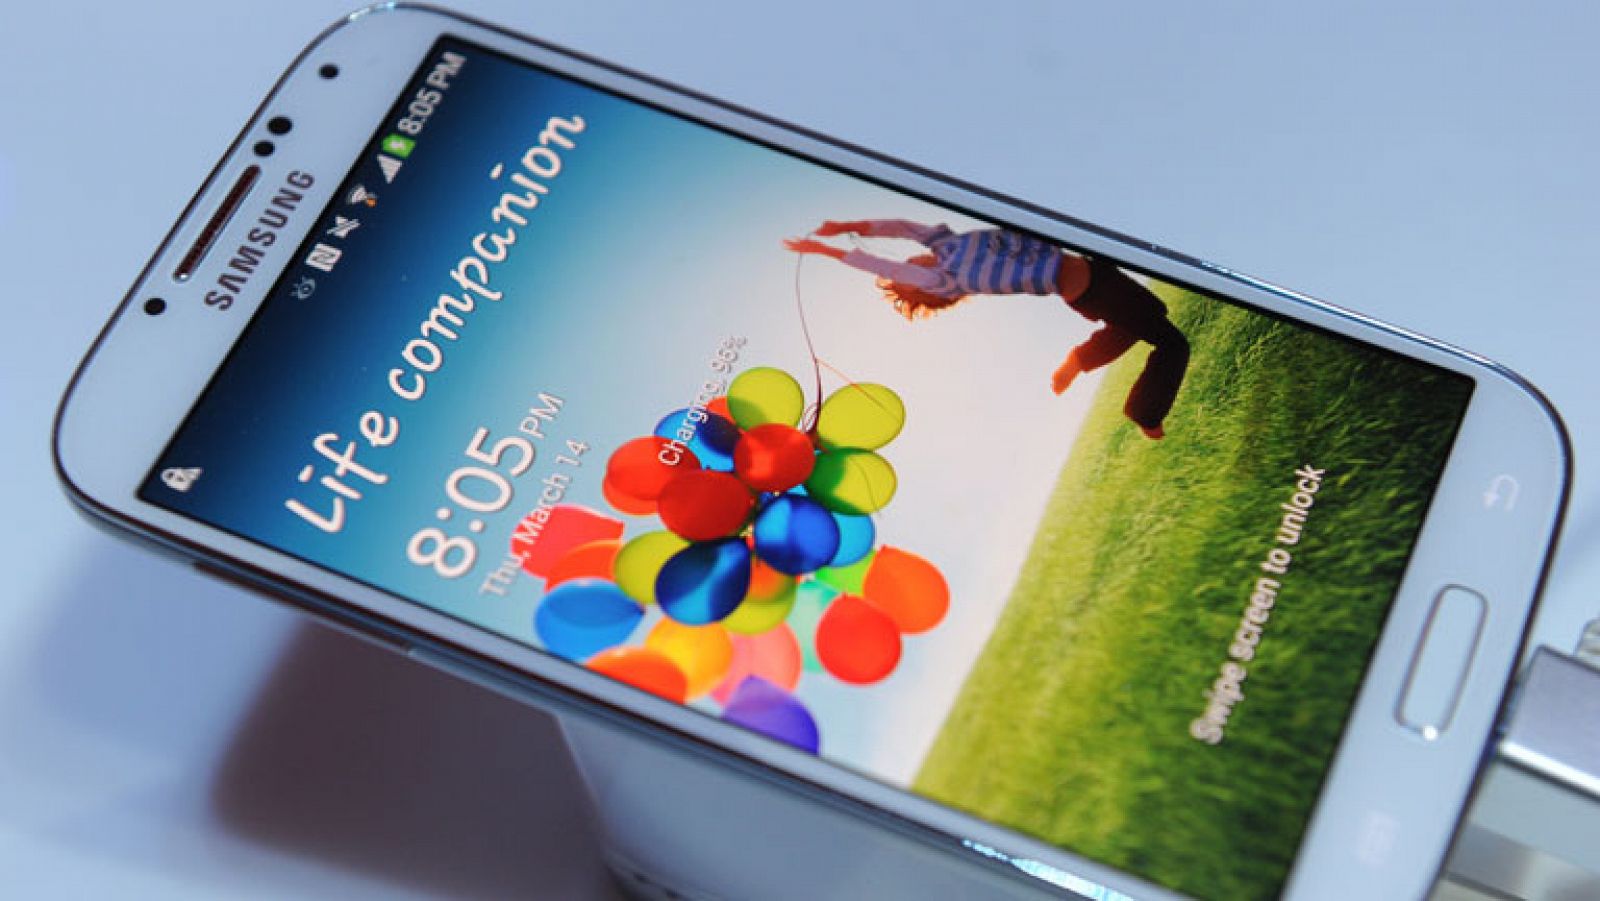 Motivos para seguir confiando en el Samsung Galaxy S4